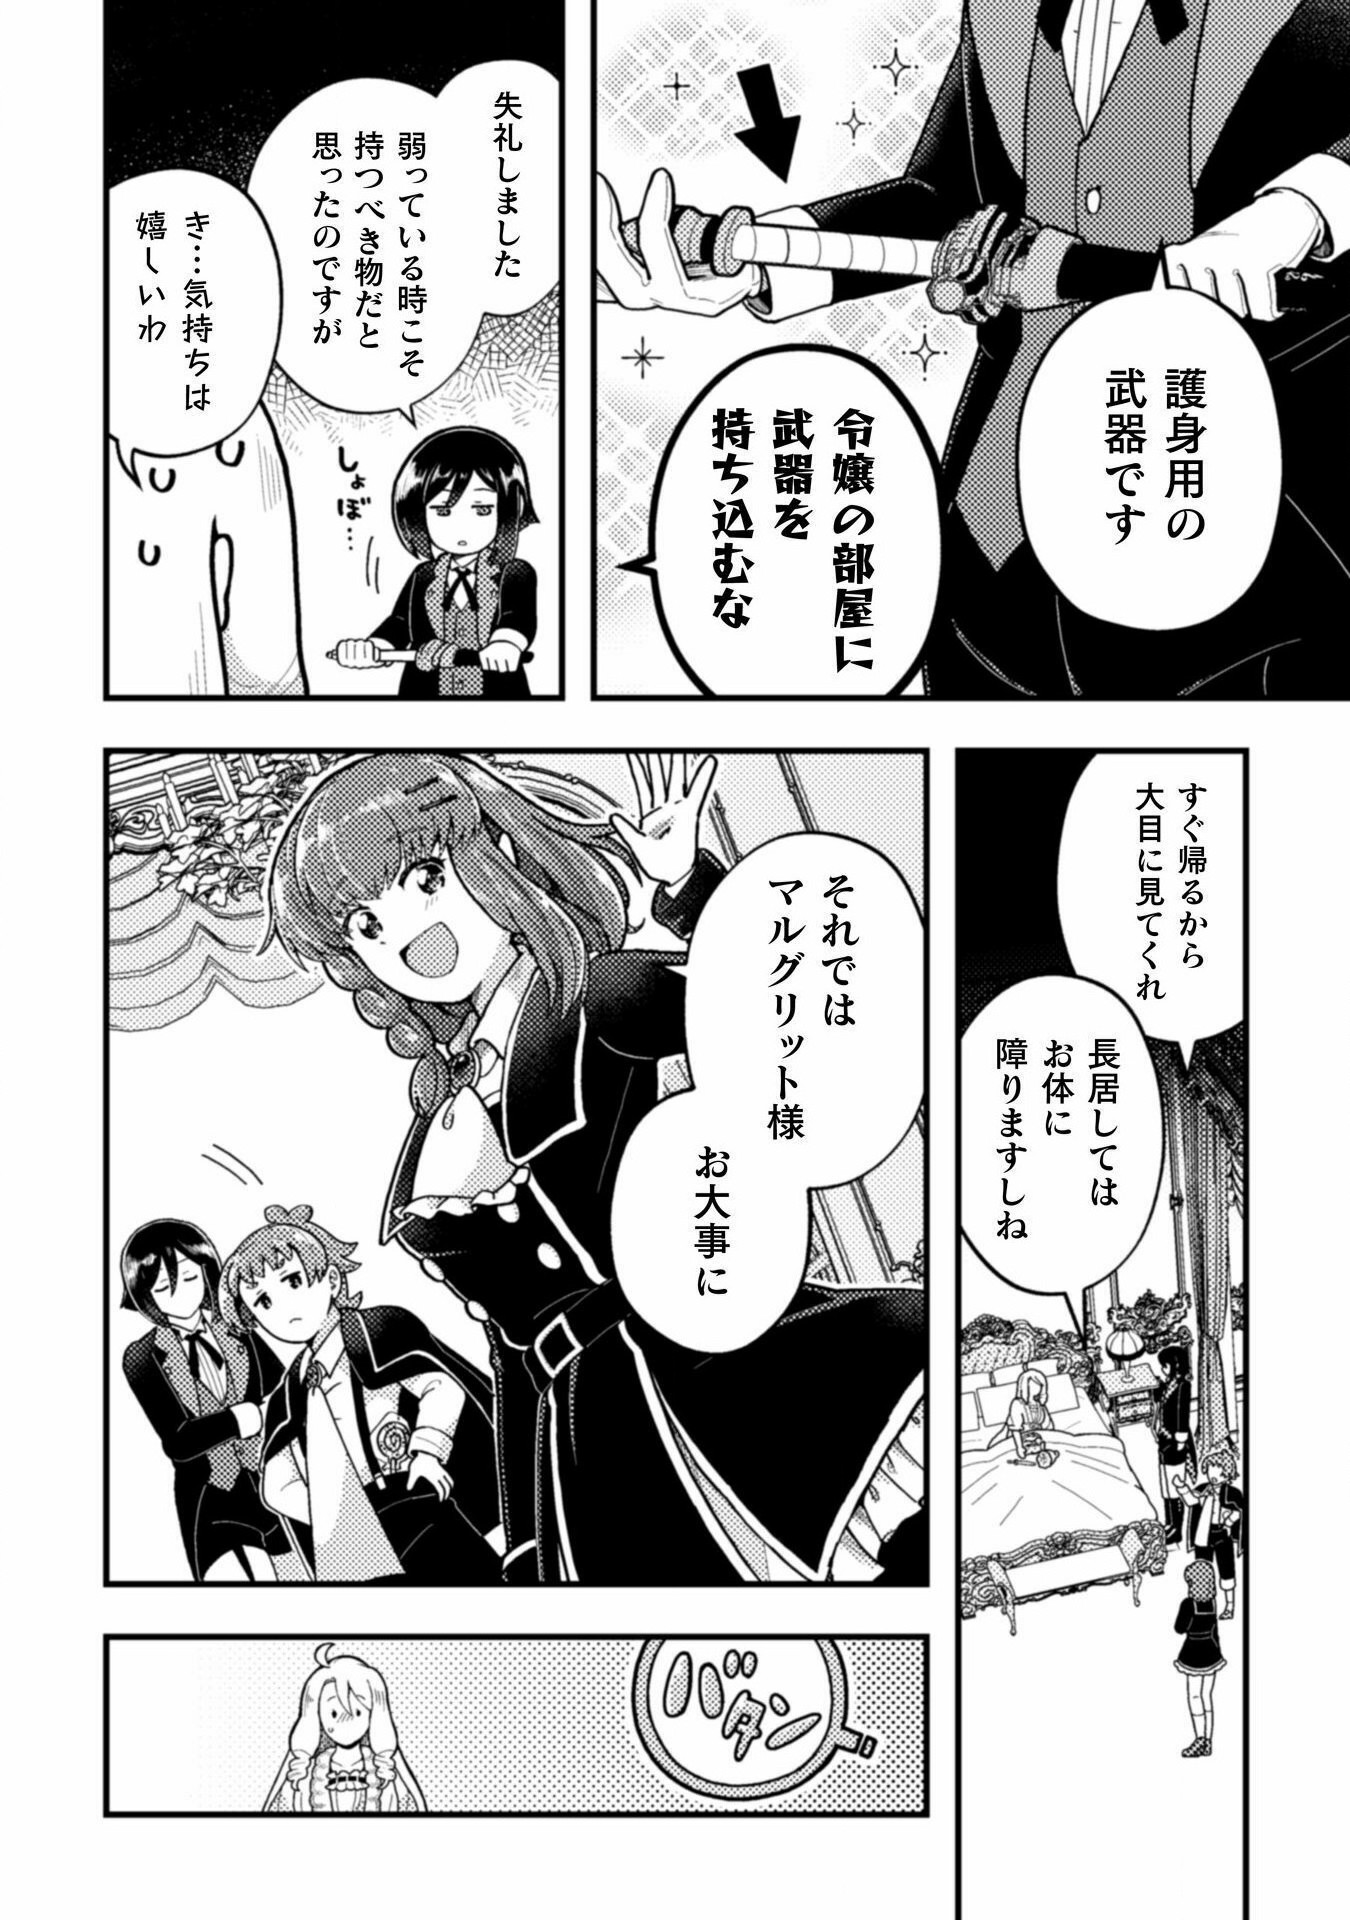 Otome Game no Akuyaku Reijou ni Tensei shitakedo Follower ga Fukyoushiteta Chisiki shikanai - Chapter 20 - Page 8